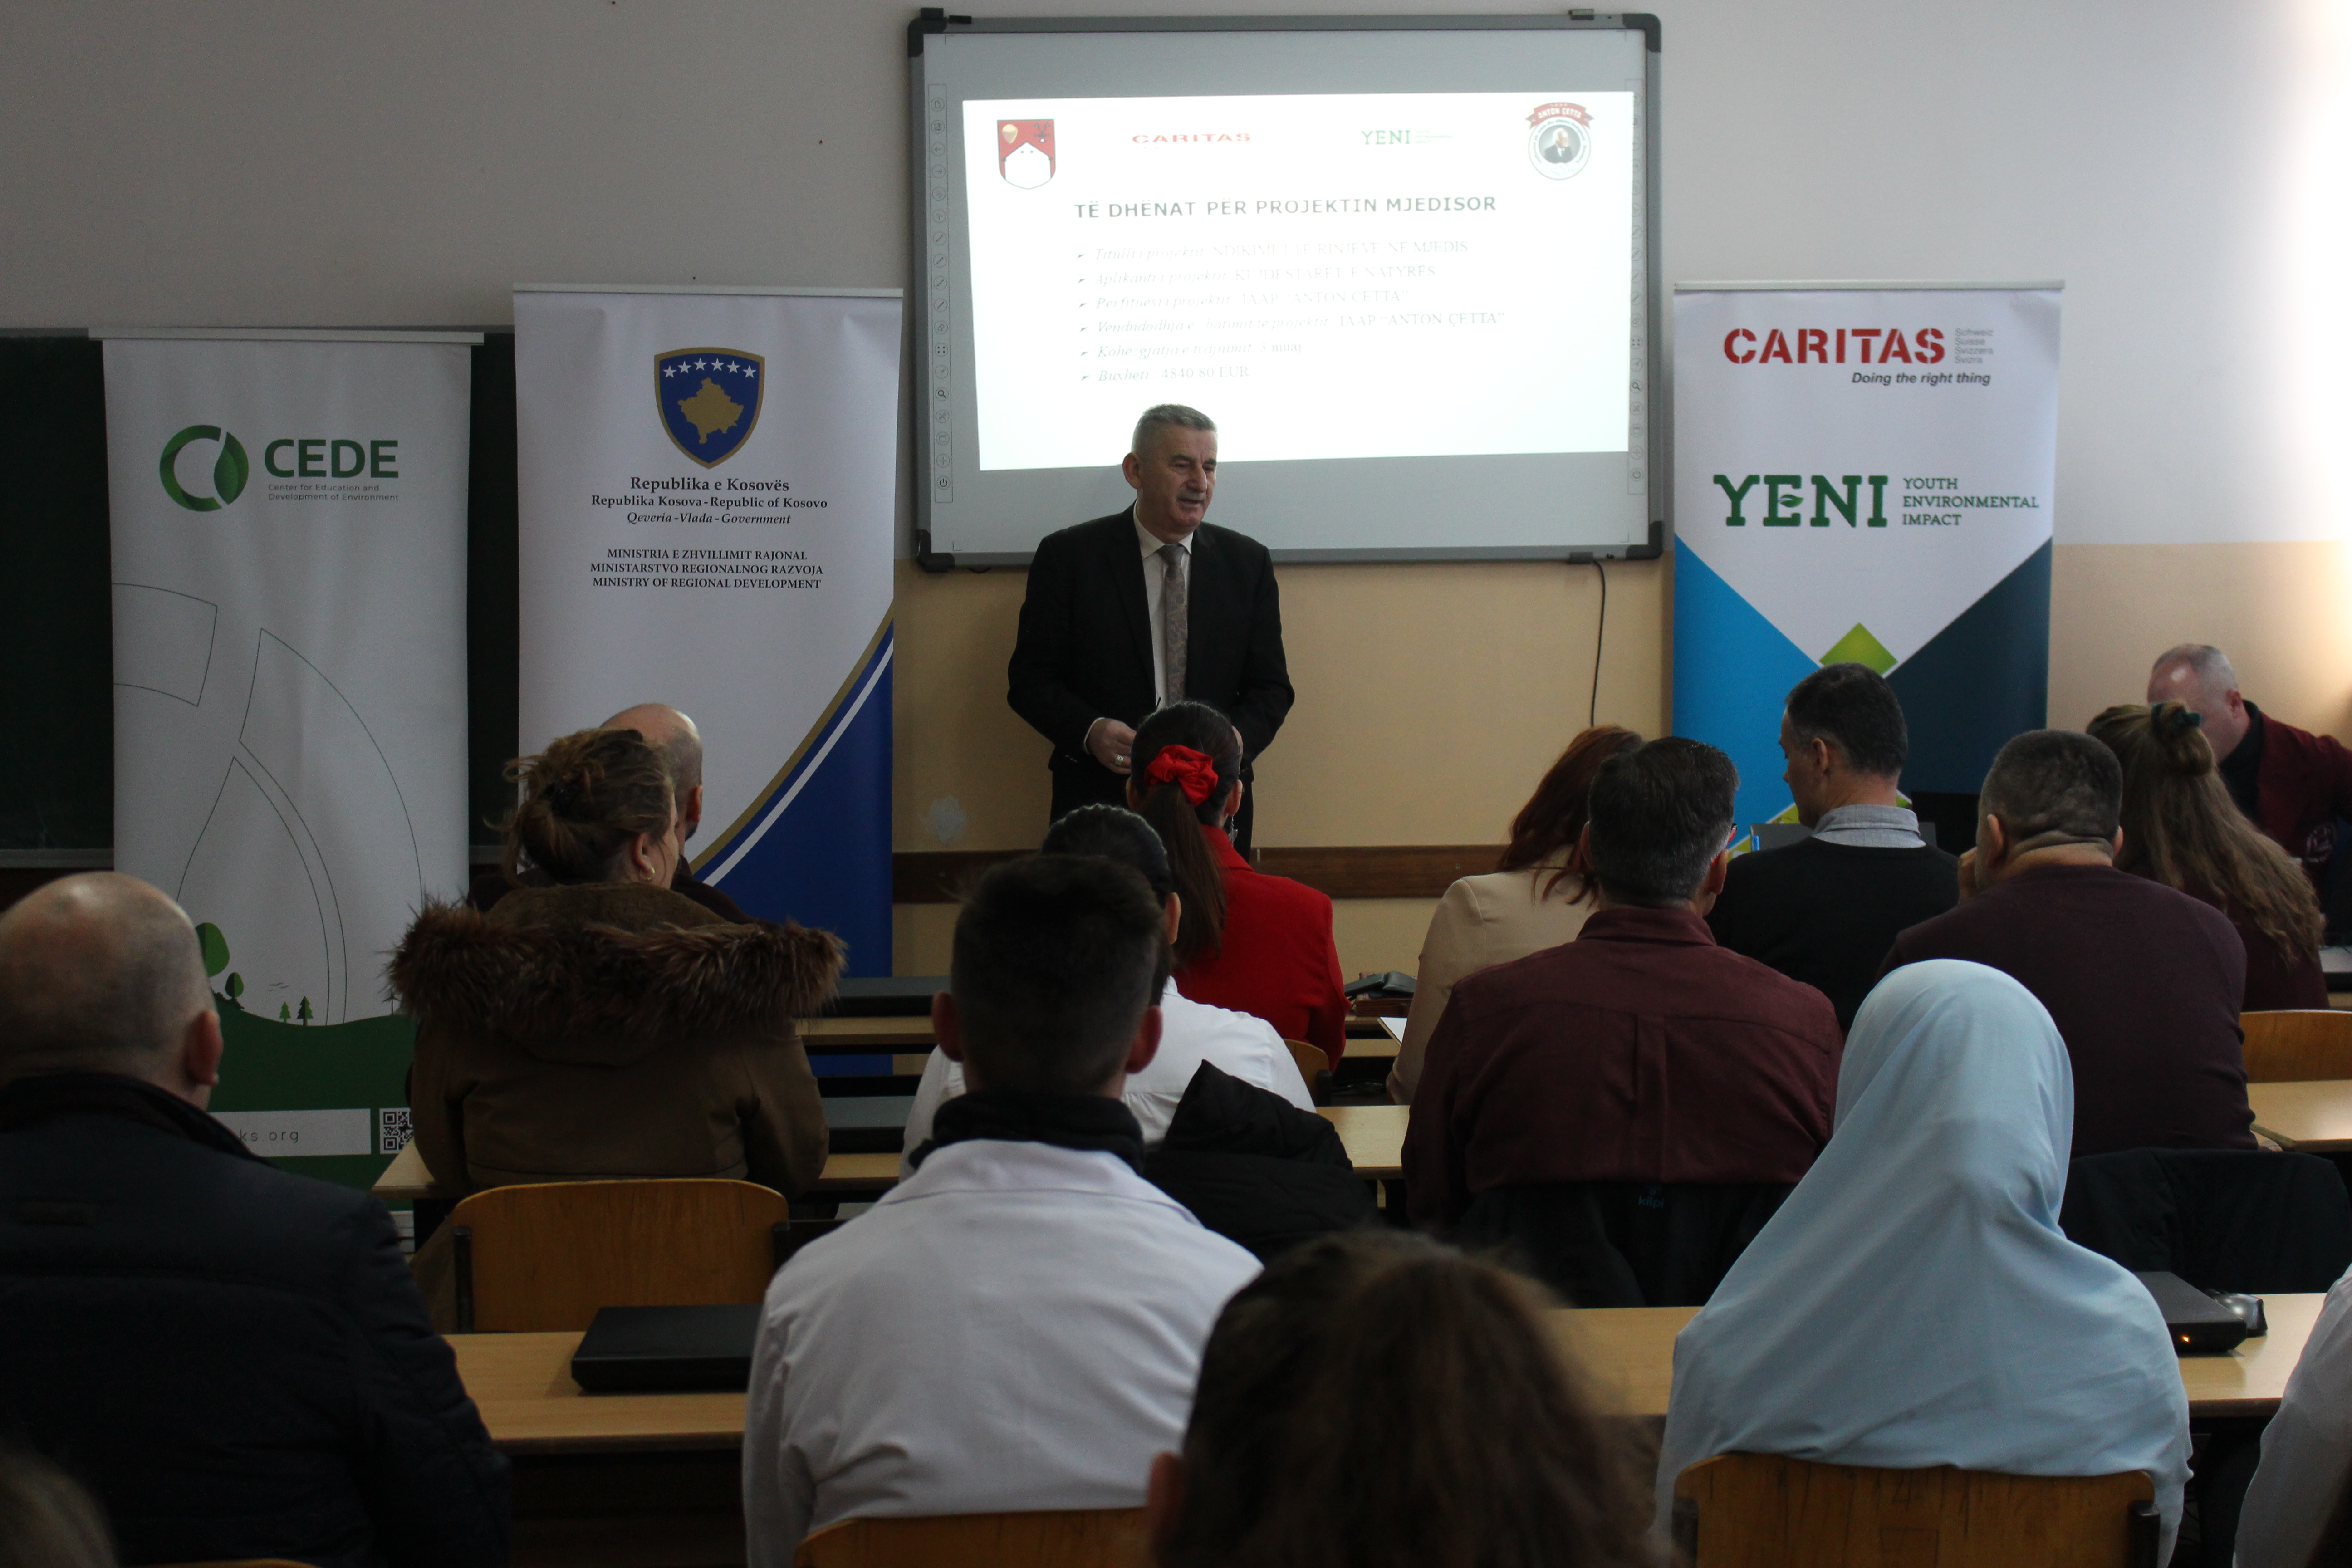 Ministria e Zhvillimit Rajonal (MZHR) në bashkëpunim me Caritasin Zviceran realizuan Inaugurimin e projektit Mjedisor të Shkollave të Mesme: “Hamëz Jashari” dhe “Anton Çeta” në komunën e Skenderajt.